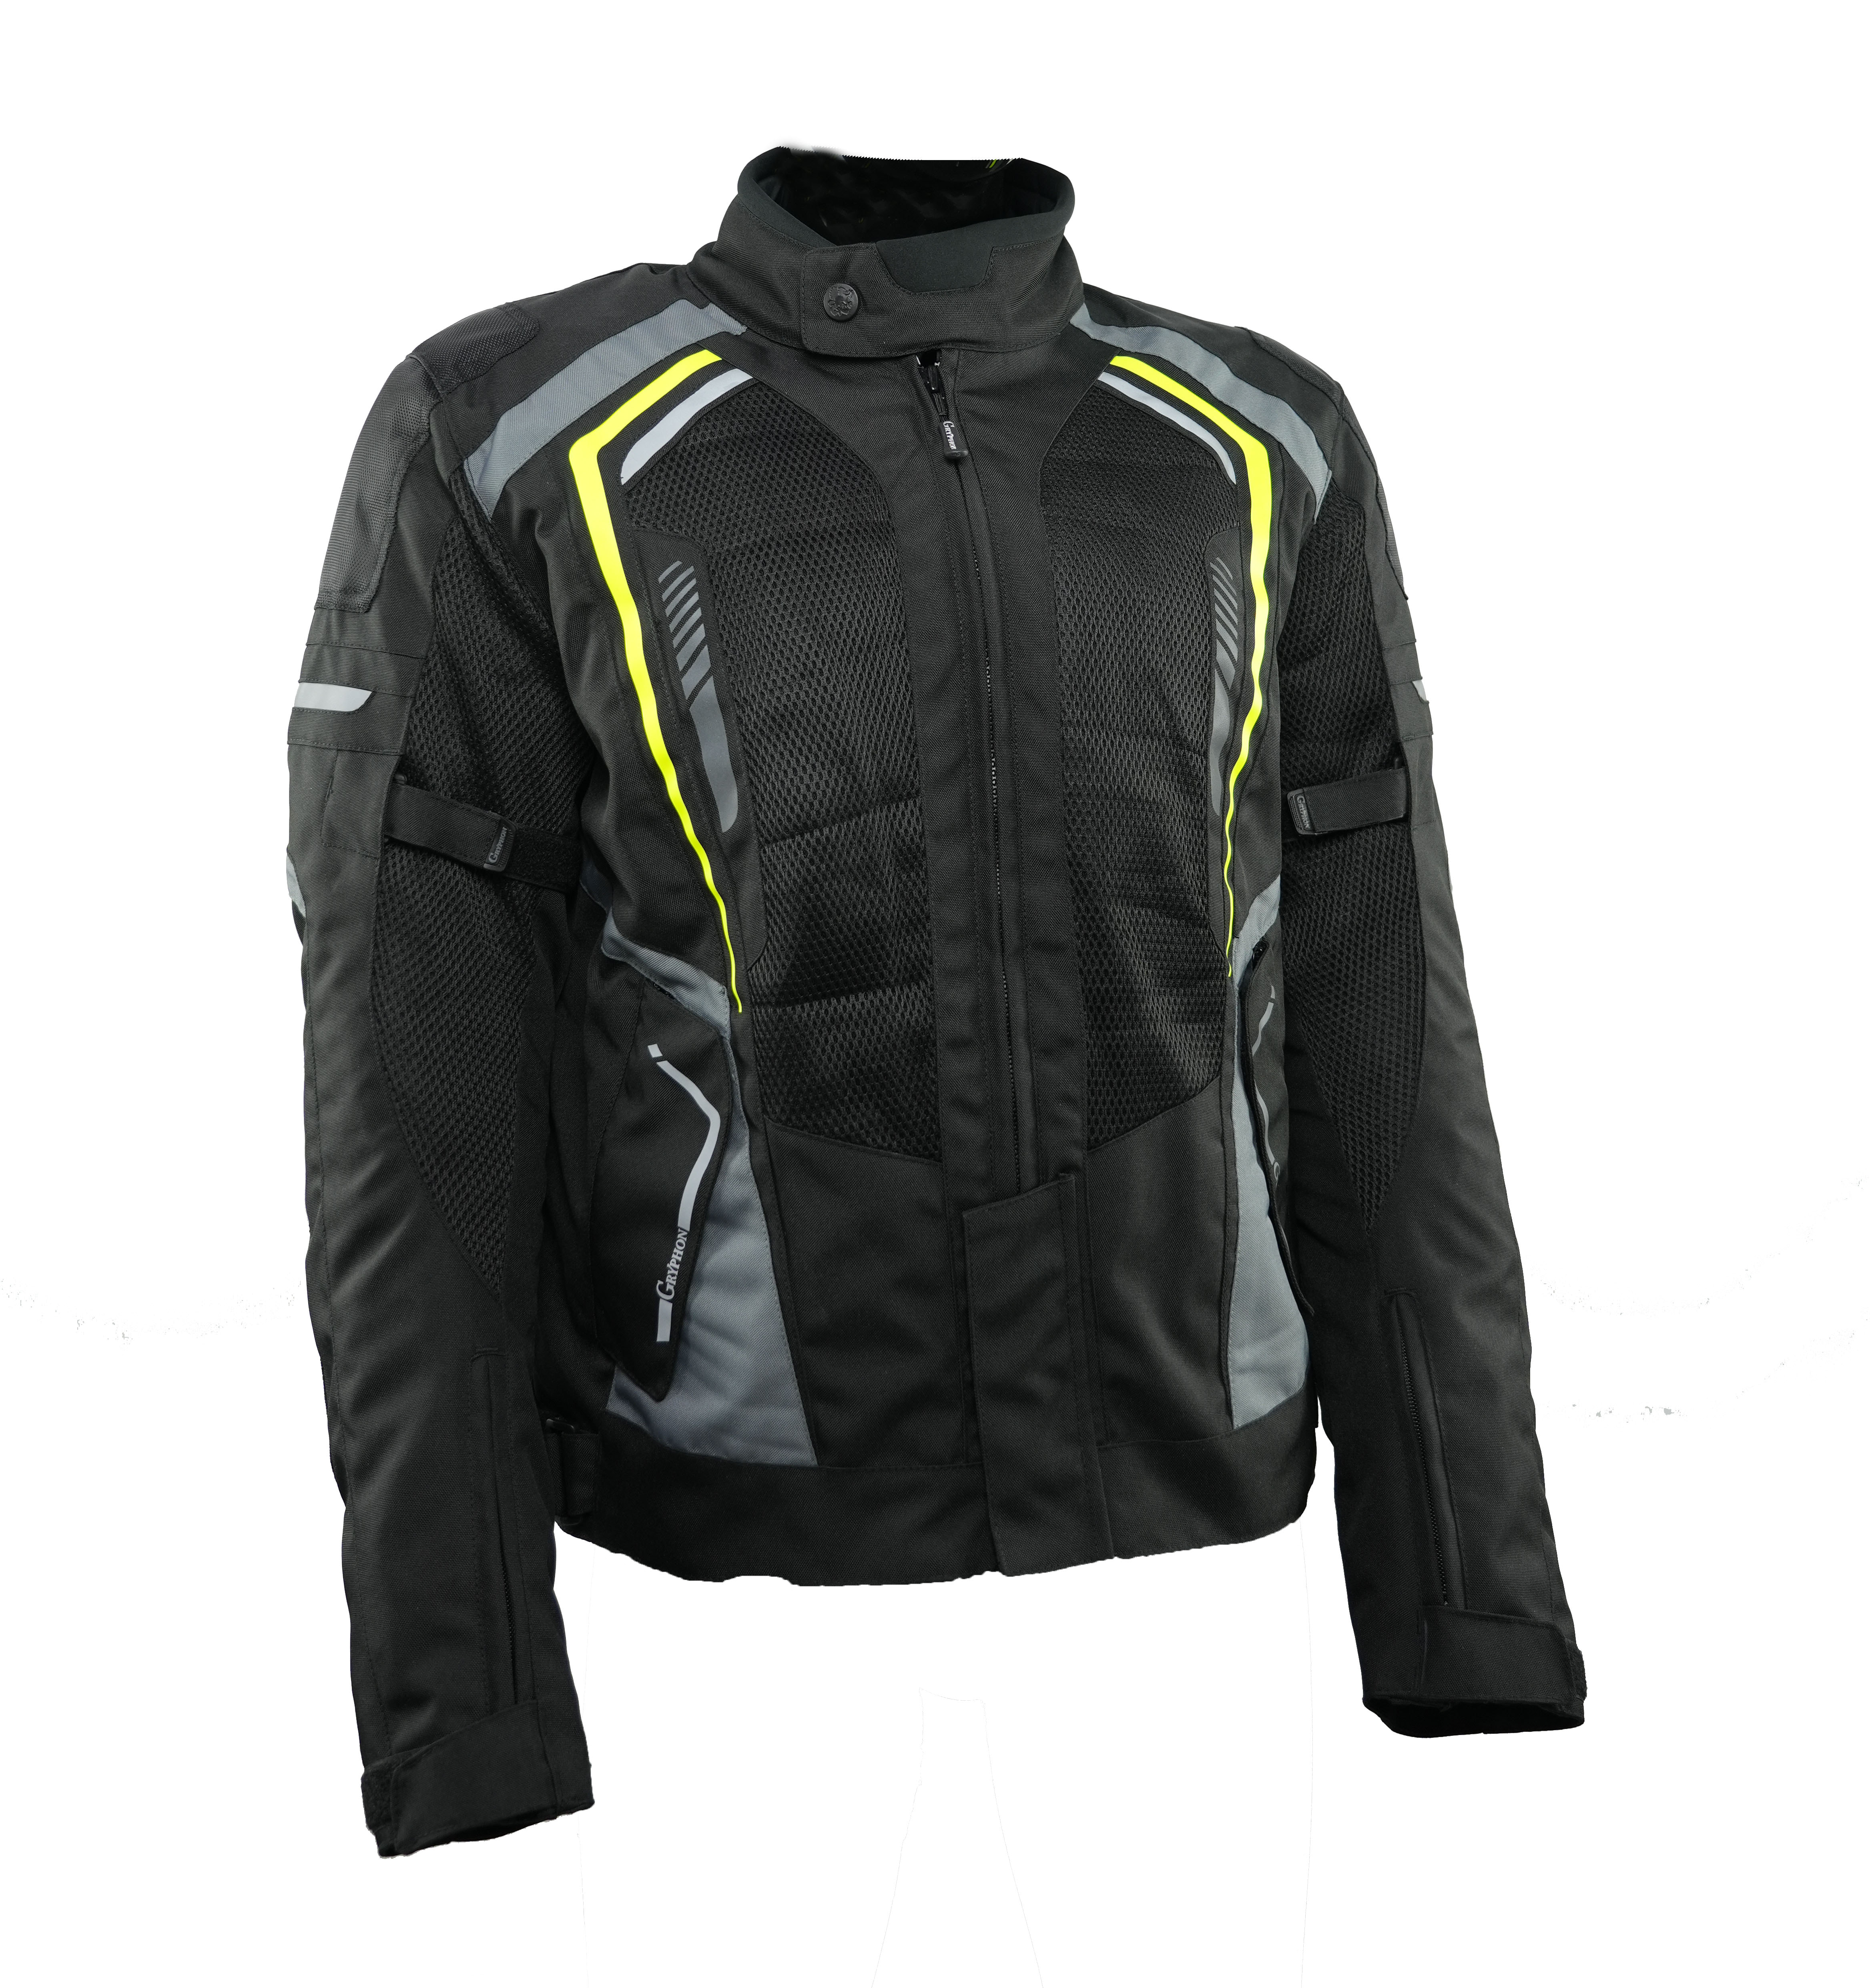 Rev'it TORQUE 2 H2O Jacket Black Anthracite For Sale Online - Outletmoto.eu